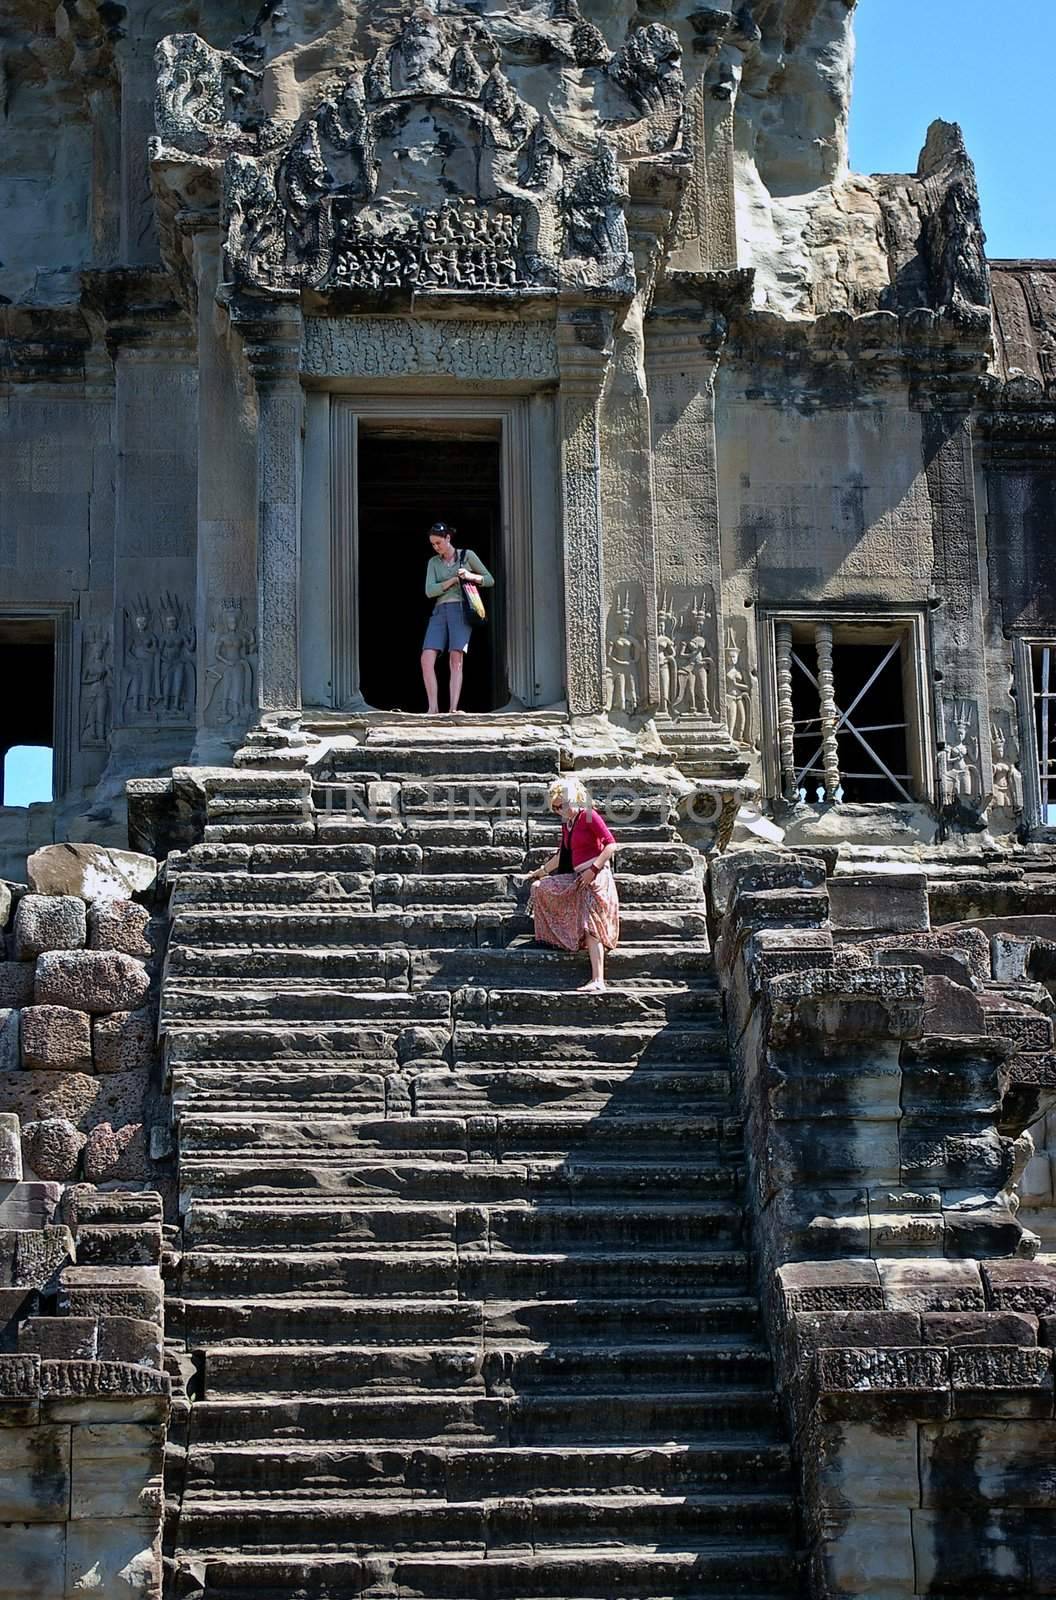 Steep steps at Angkor Wat by Komar